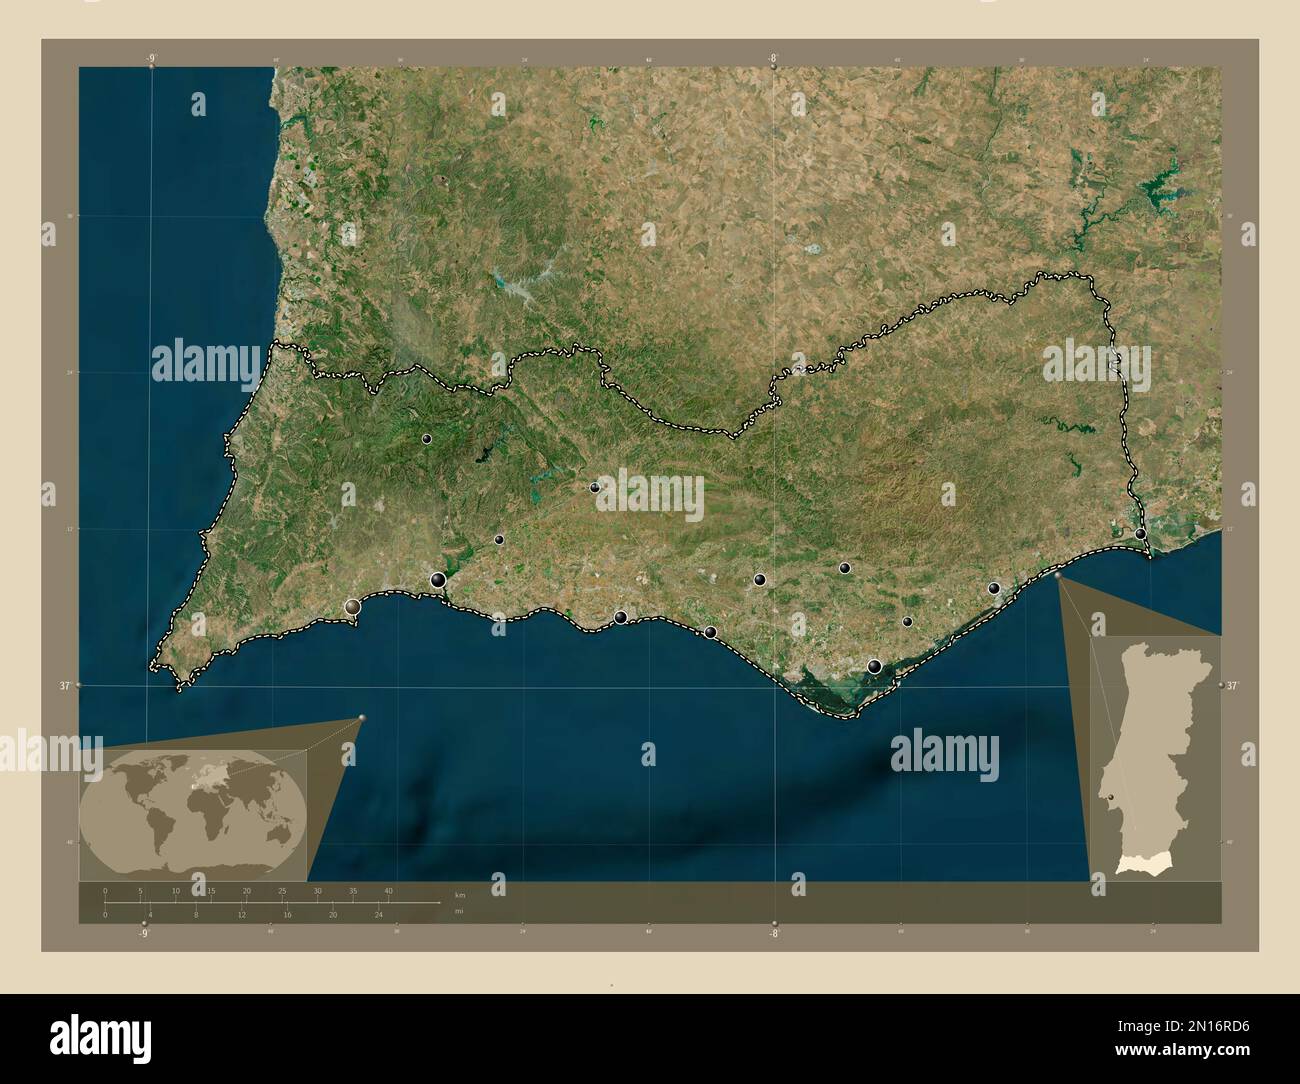 Faro, der Bezirk von Portugal. Hochauflösende Satellitenkarte. Standorte der wichtigsten Städte der Region. Eckkarten für zusätzliche Standorte Stockfoto